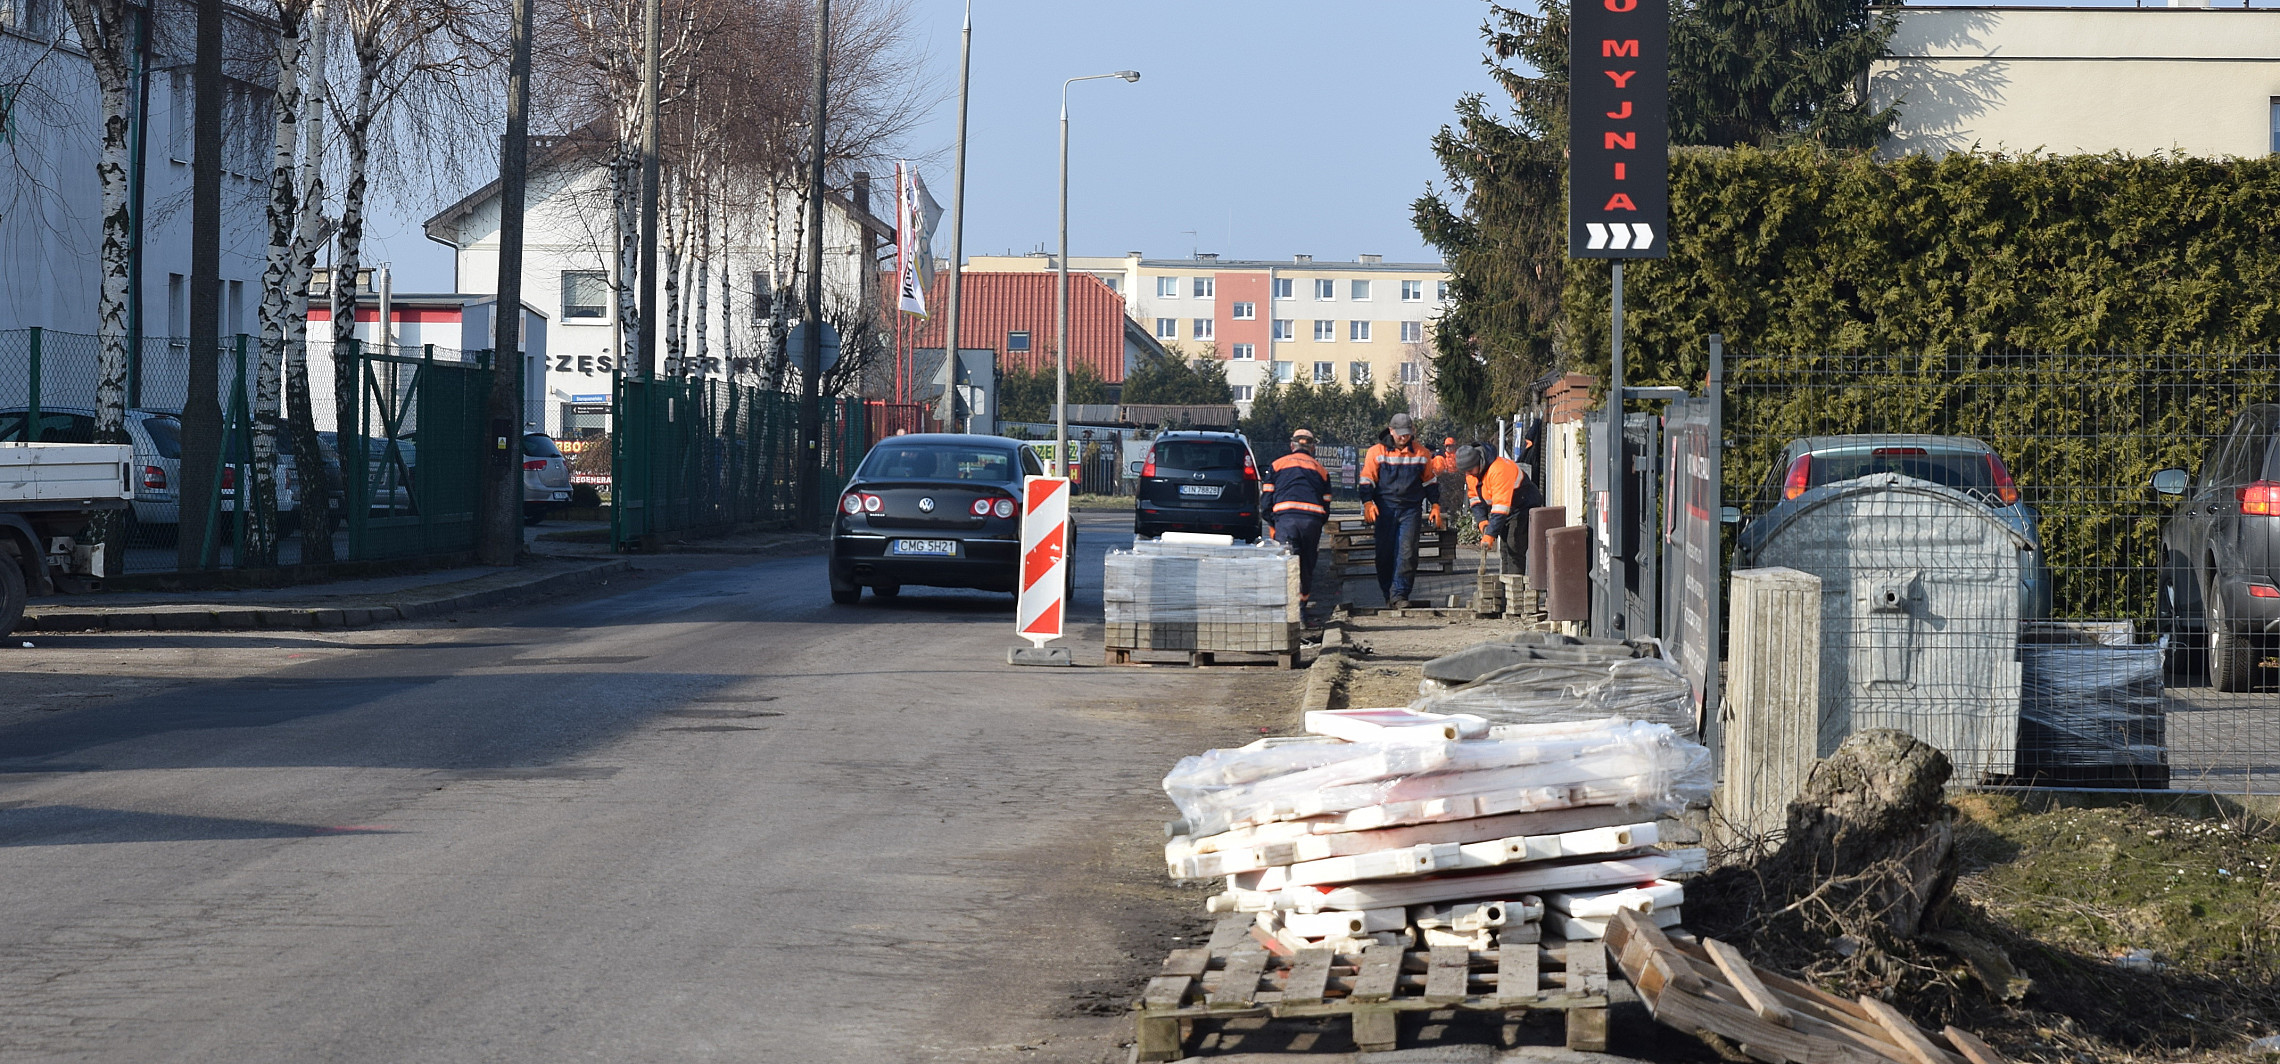 Inowrocław - Ruszyły prace na ulicy Cichej. Co się zmieni?